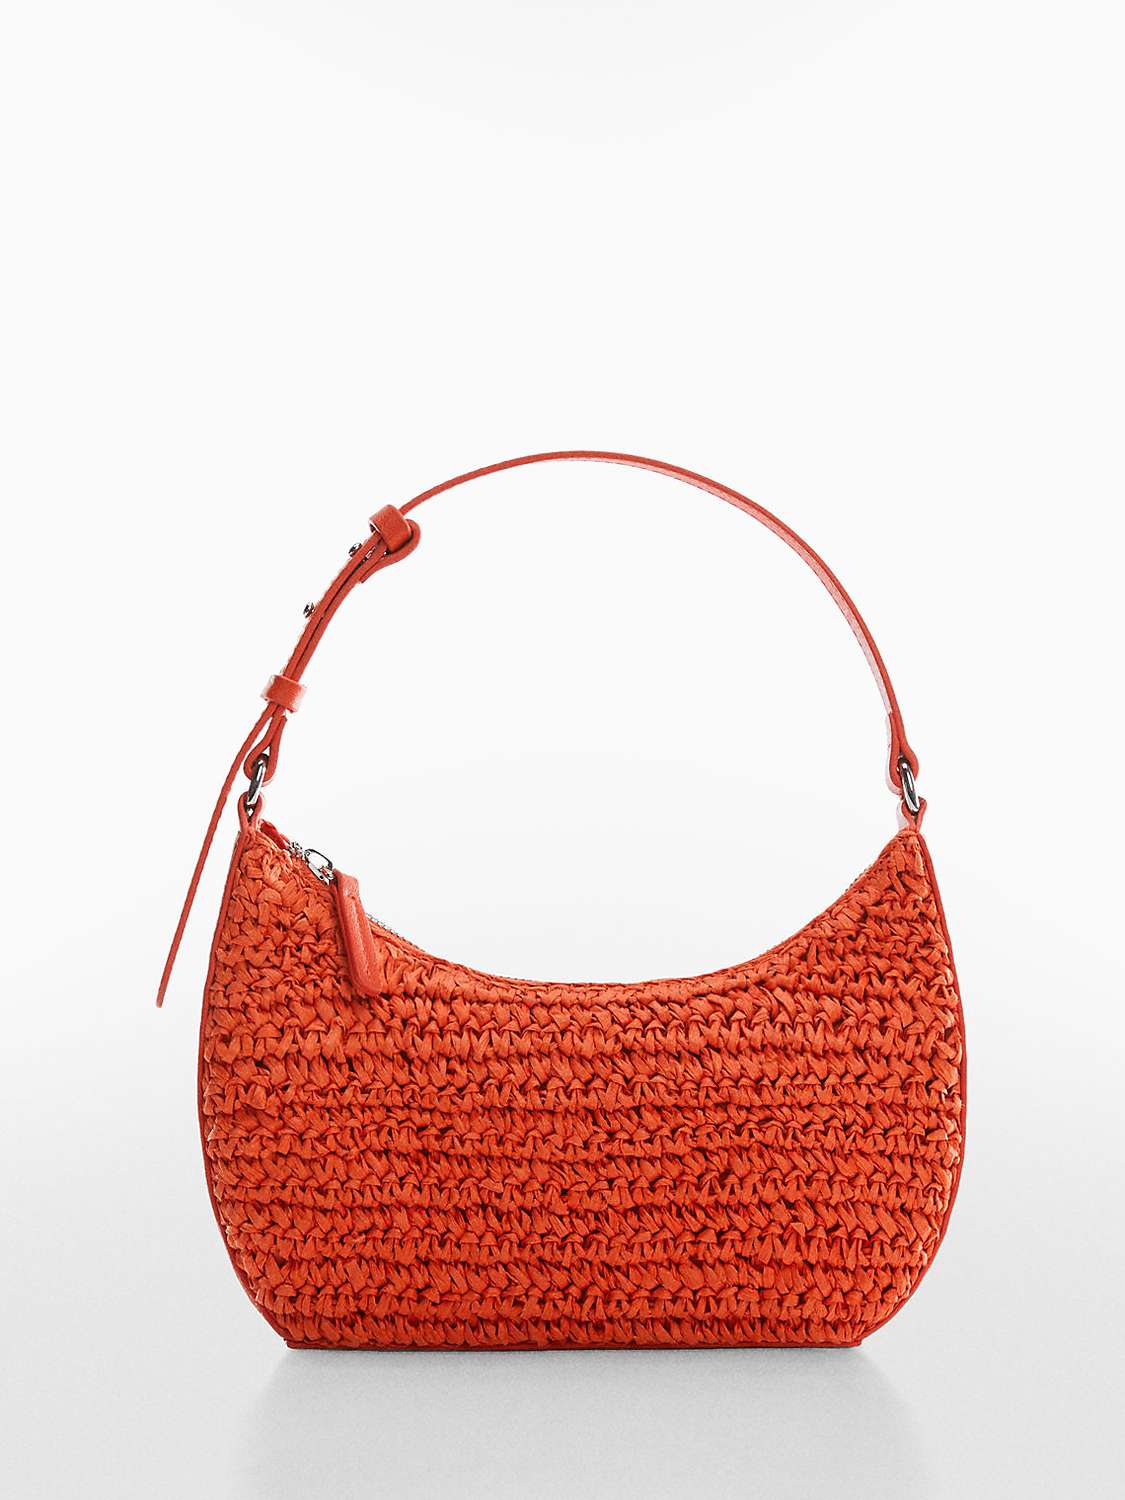 Mango Tenerife Straw Handbag, Orange at John Lewis & Partners